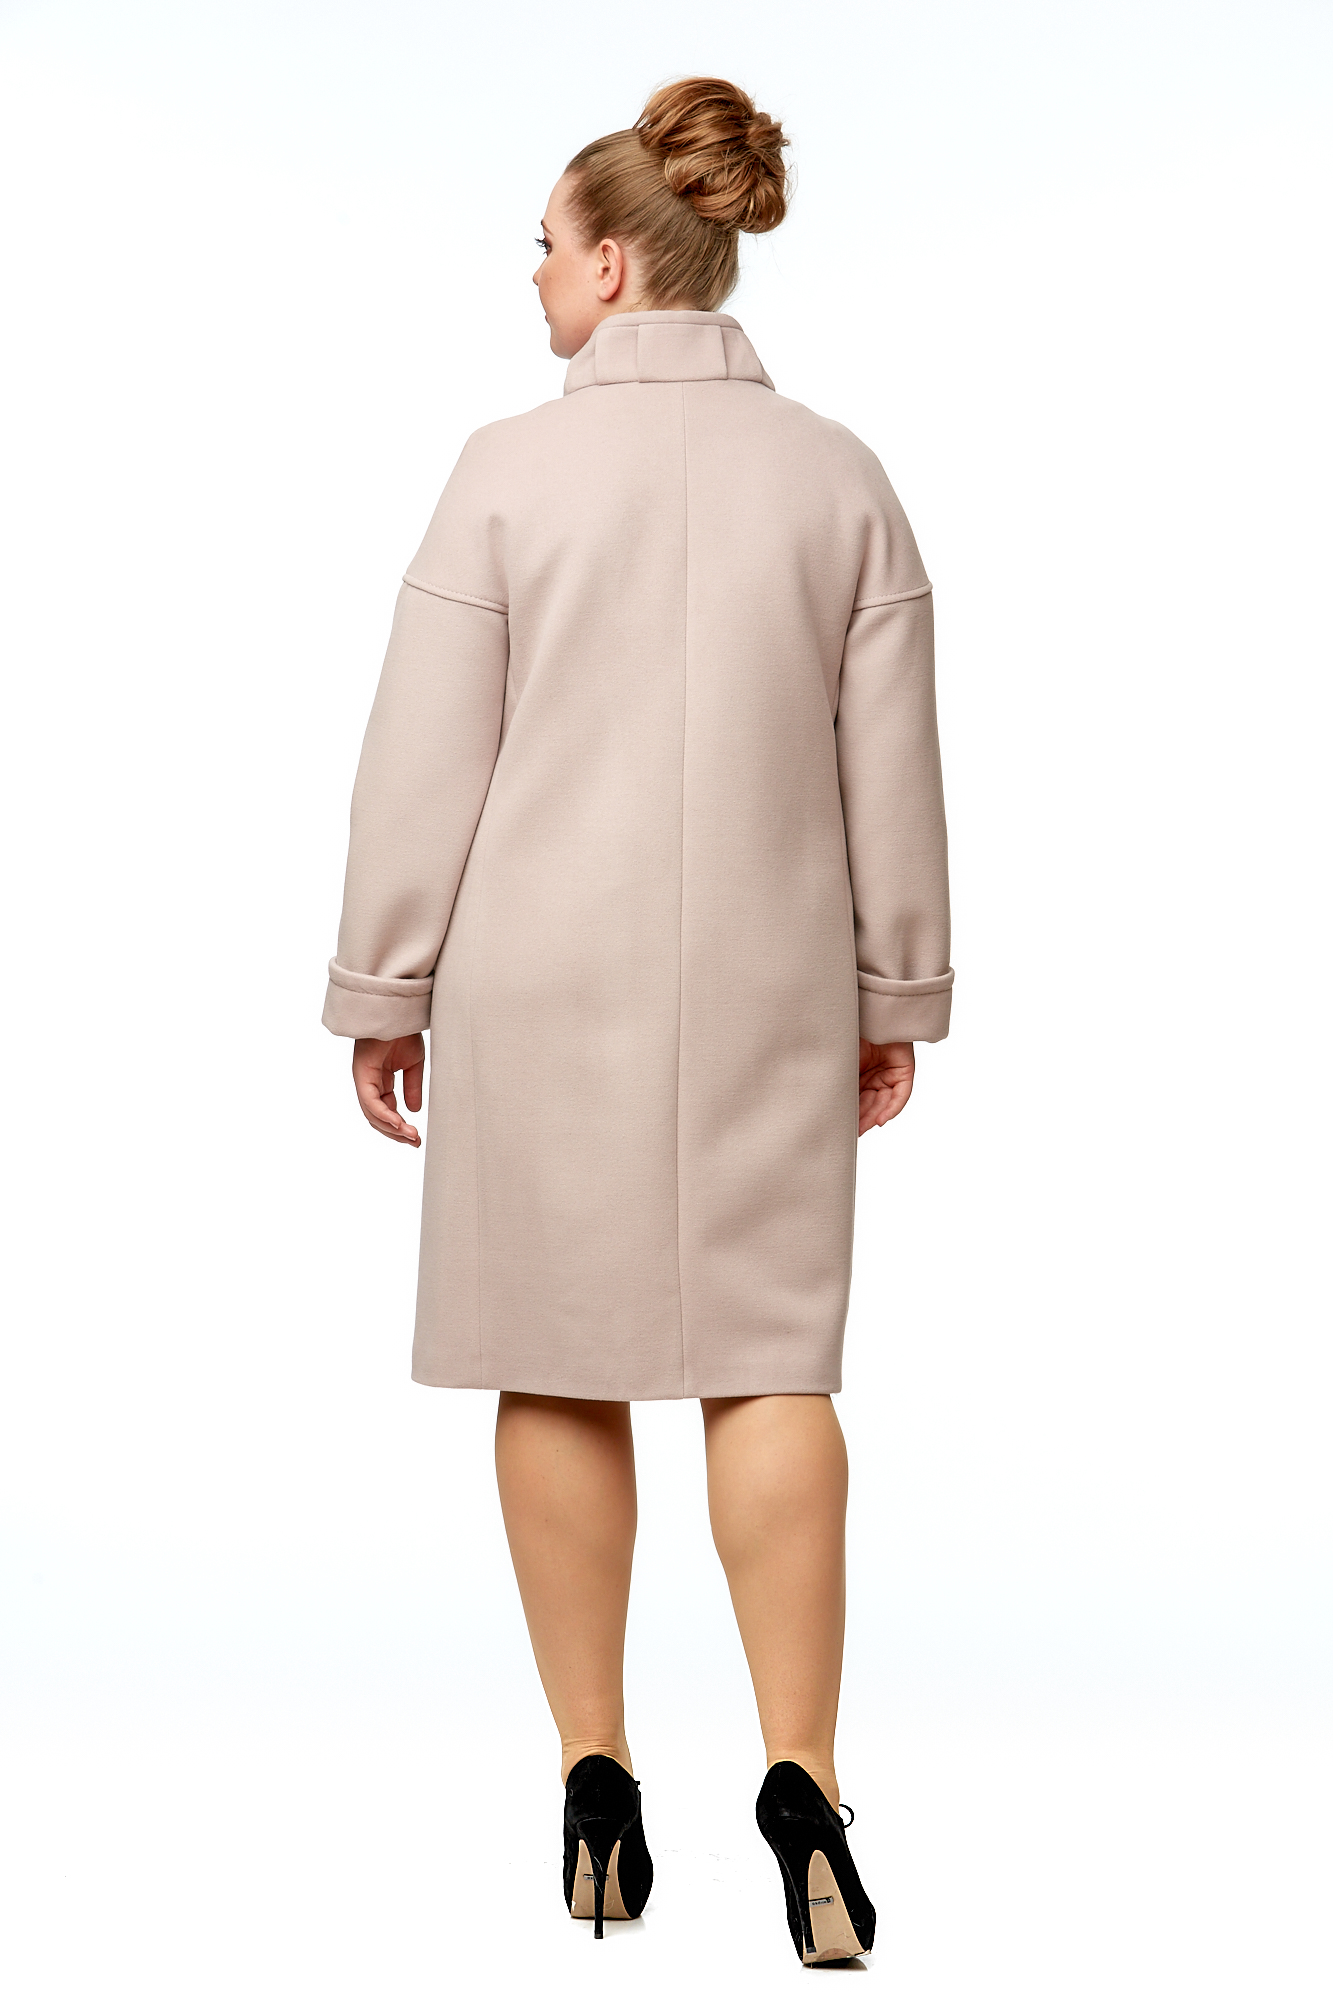 Женское пальто из текстиля с воротником 8000962-3